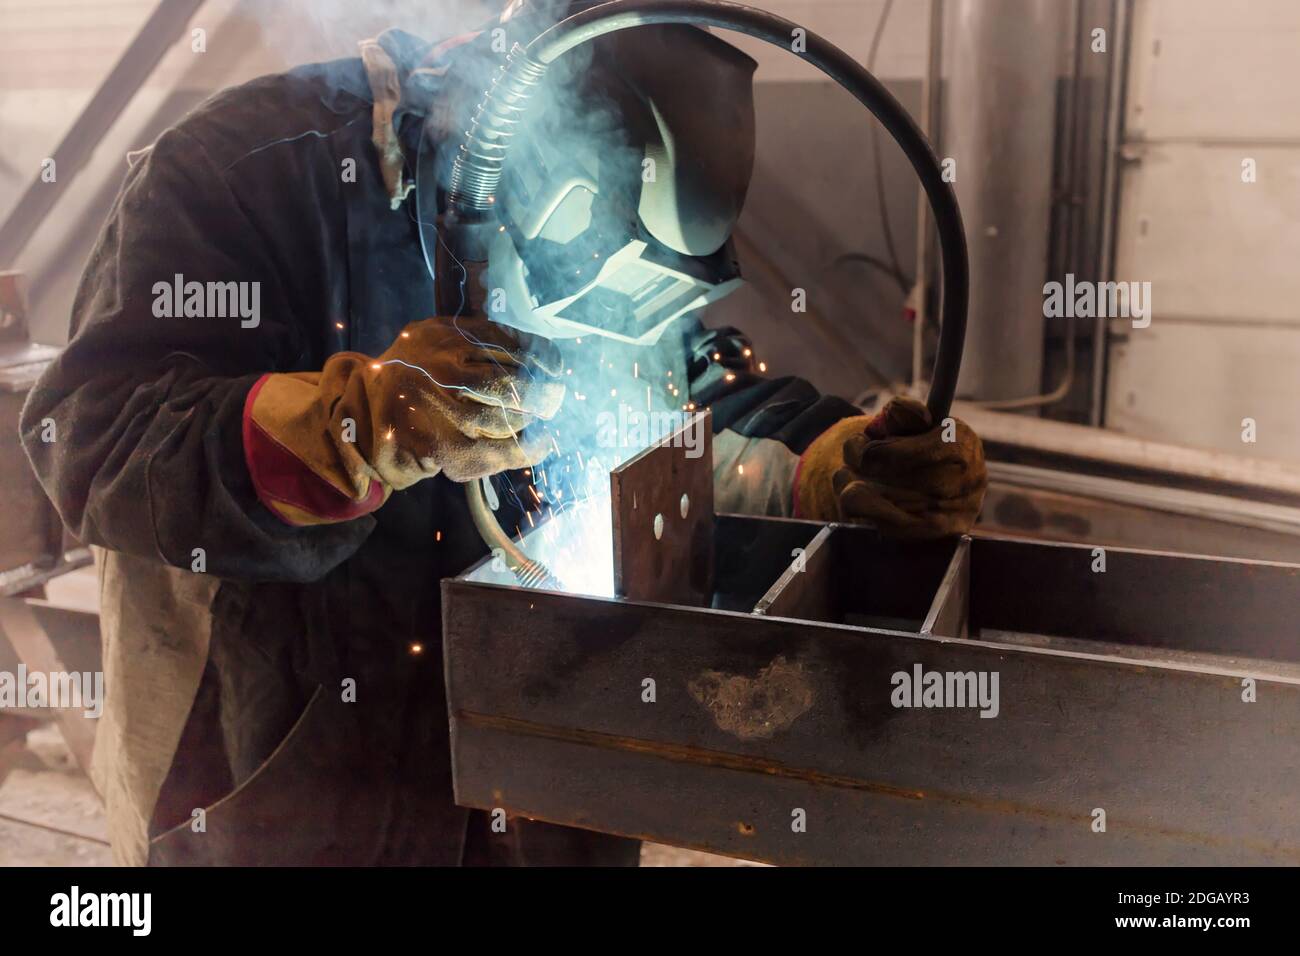 Welder performs welding work of metal structures Stock Photo